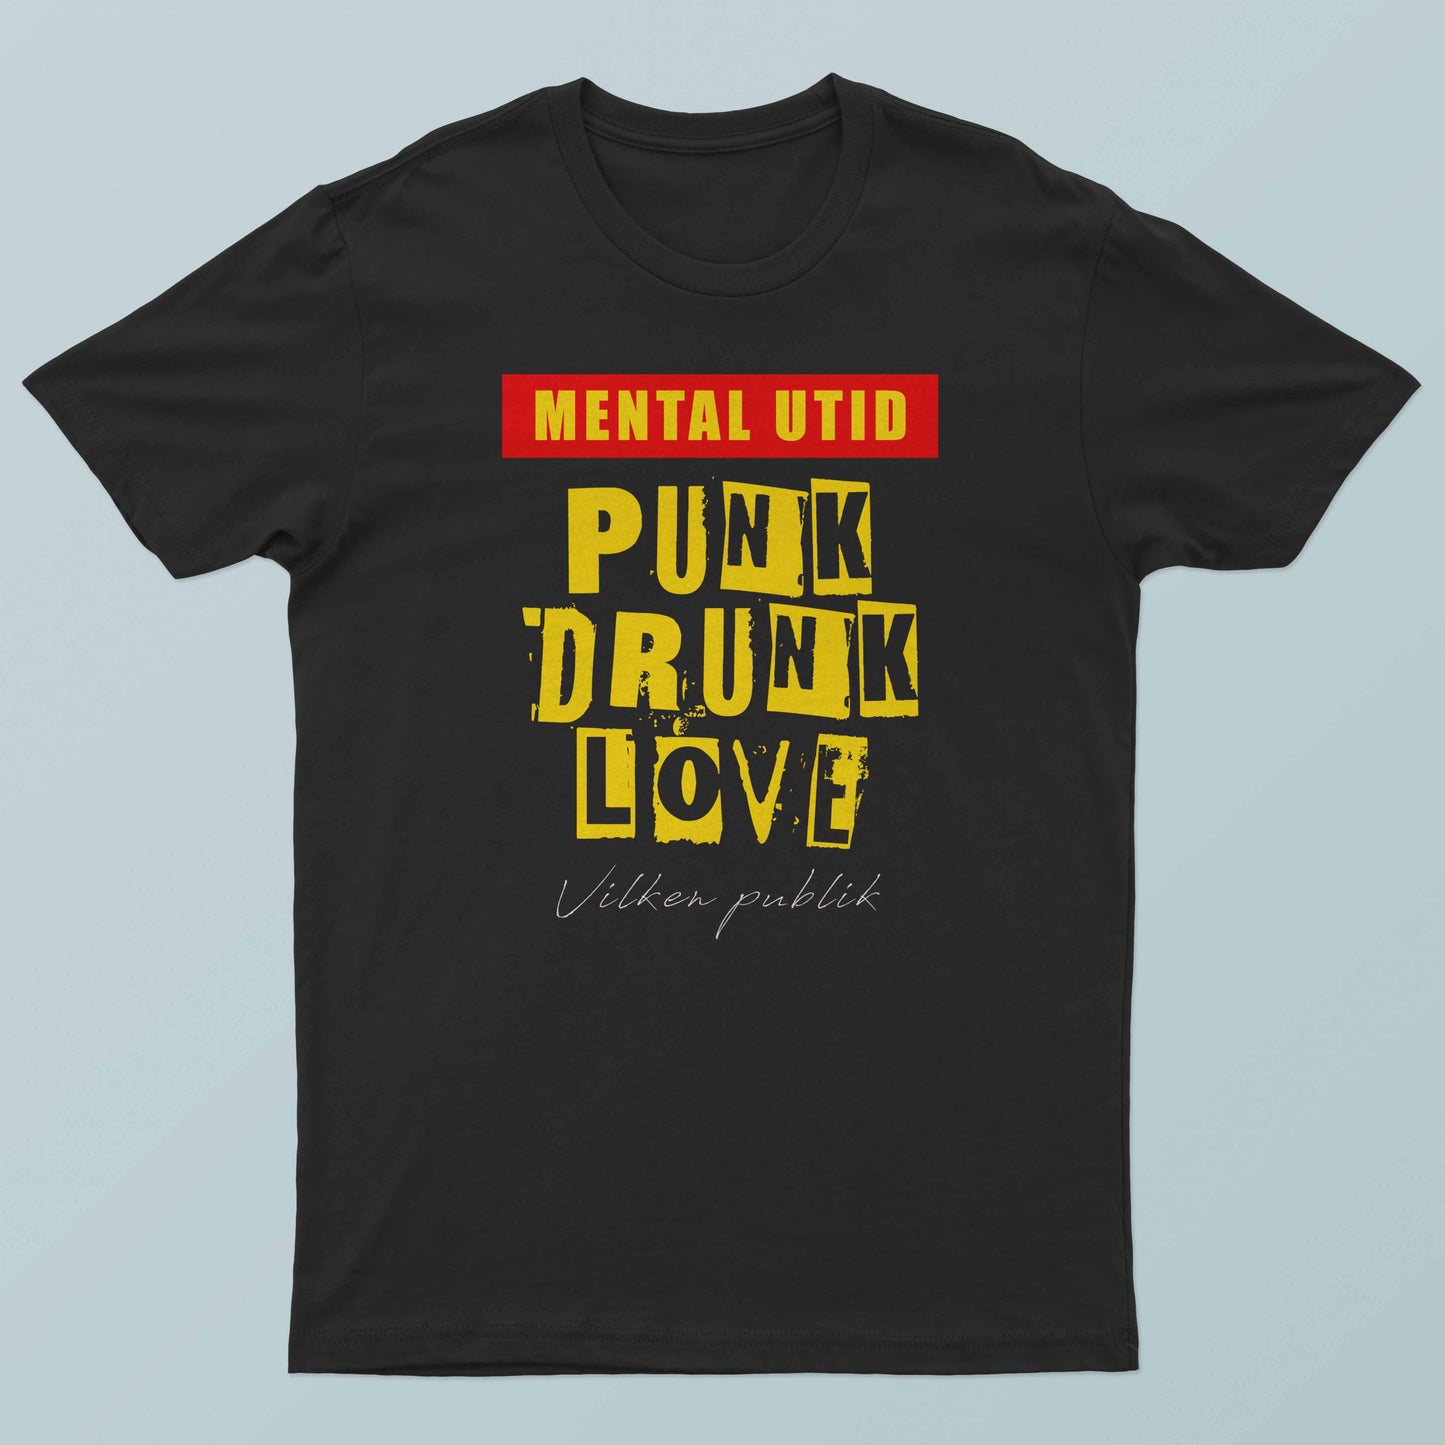 Punk Drunk Love by MENTAL UTID